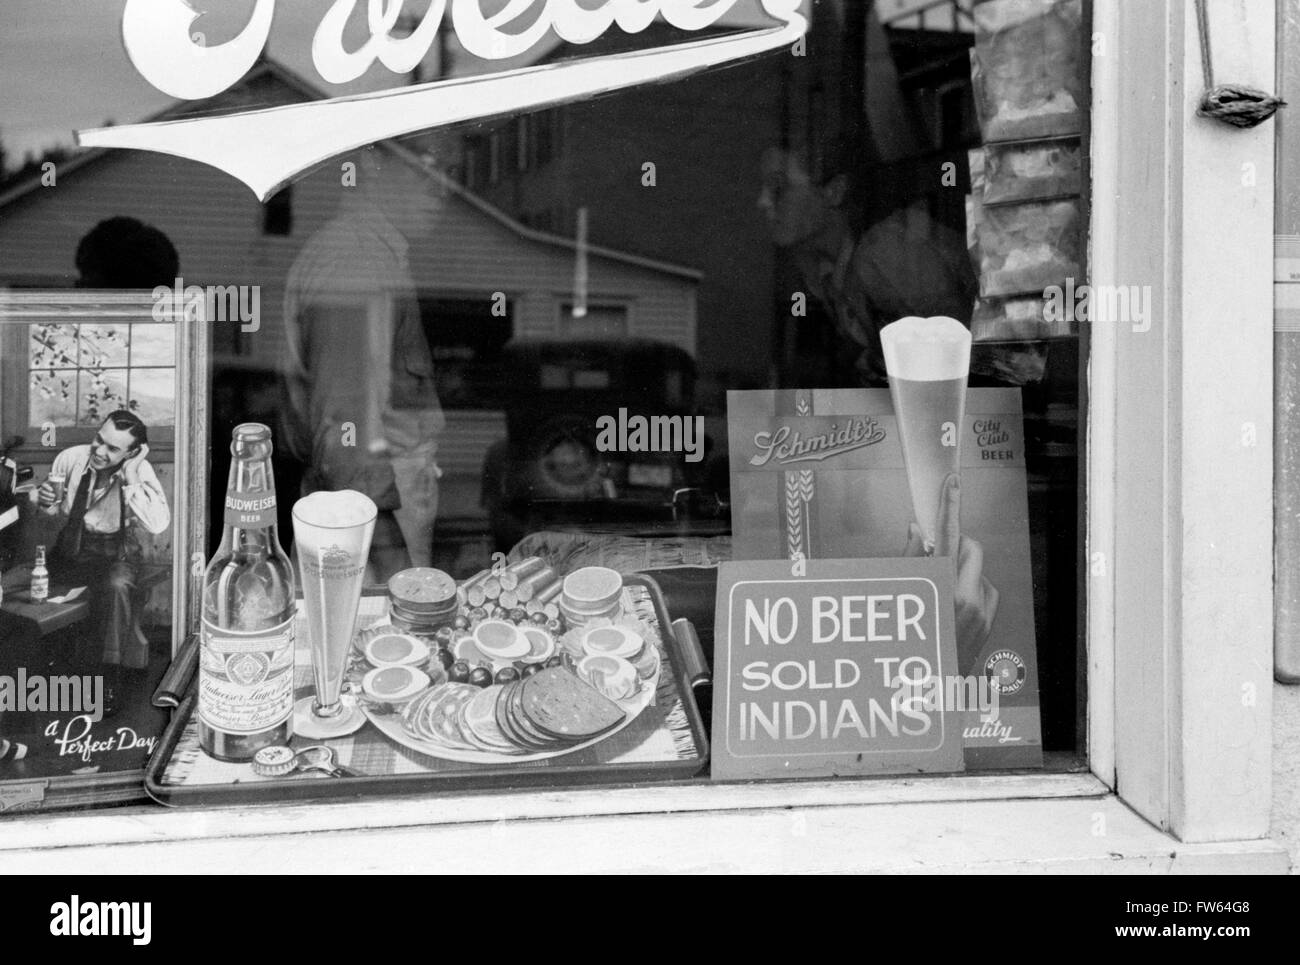 La discrimination raciale. 'Pas de bière vendus aux Indiens" dans la fenêtre d'un bar à Sisseton, Dakota du Sud, USA. Photo de John Vachon, 1939. Banque D'Images